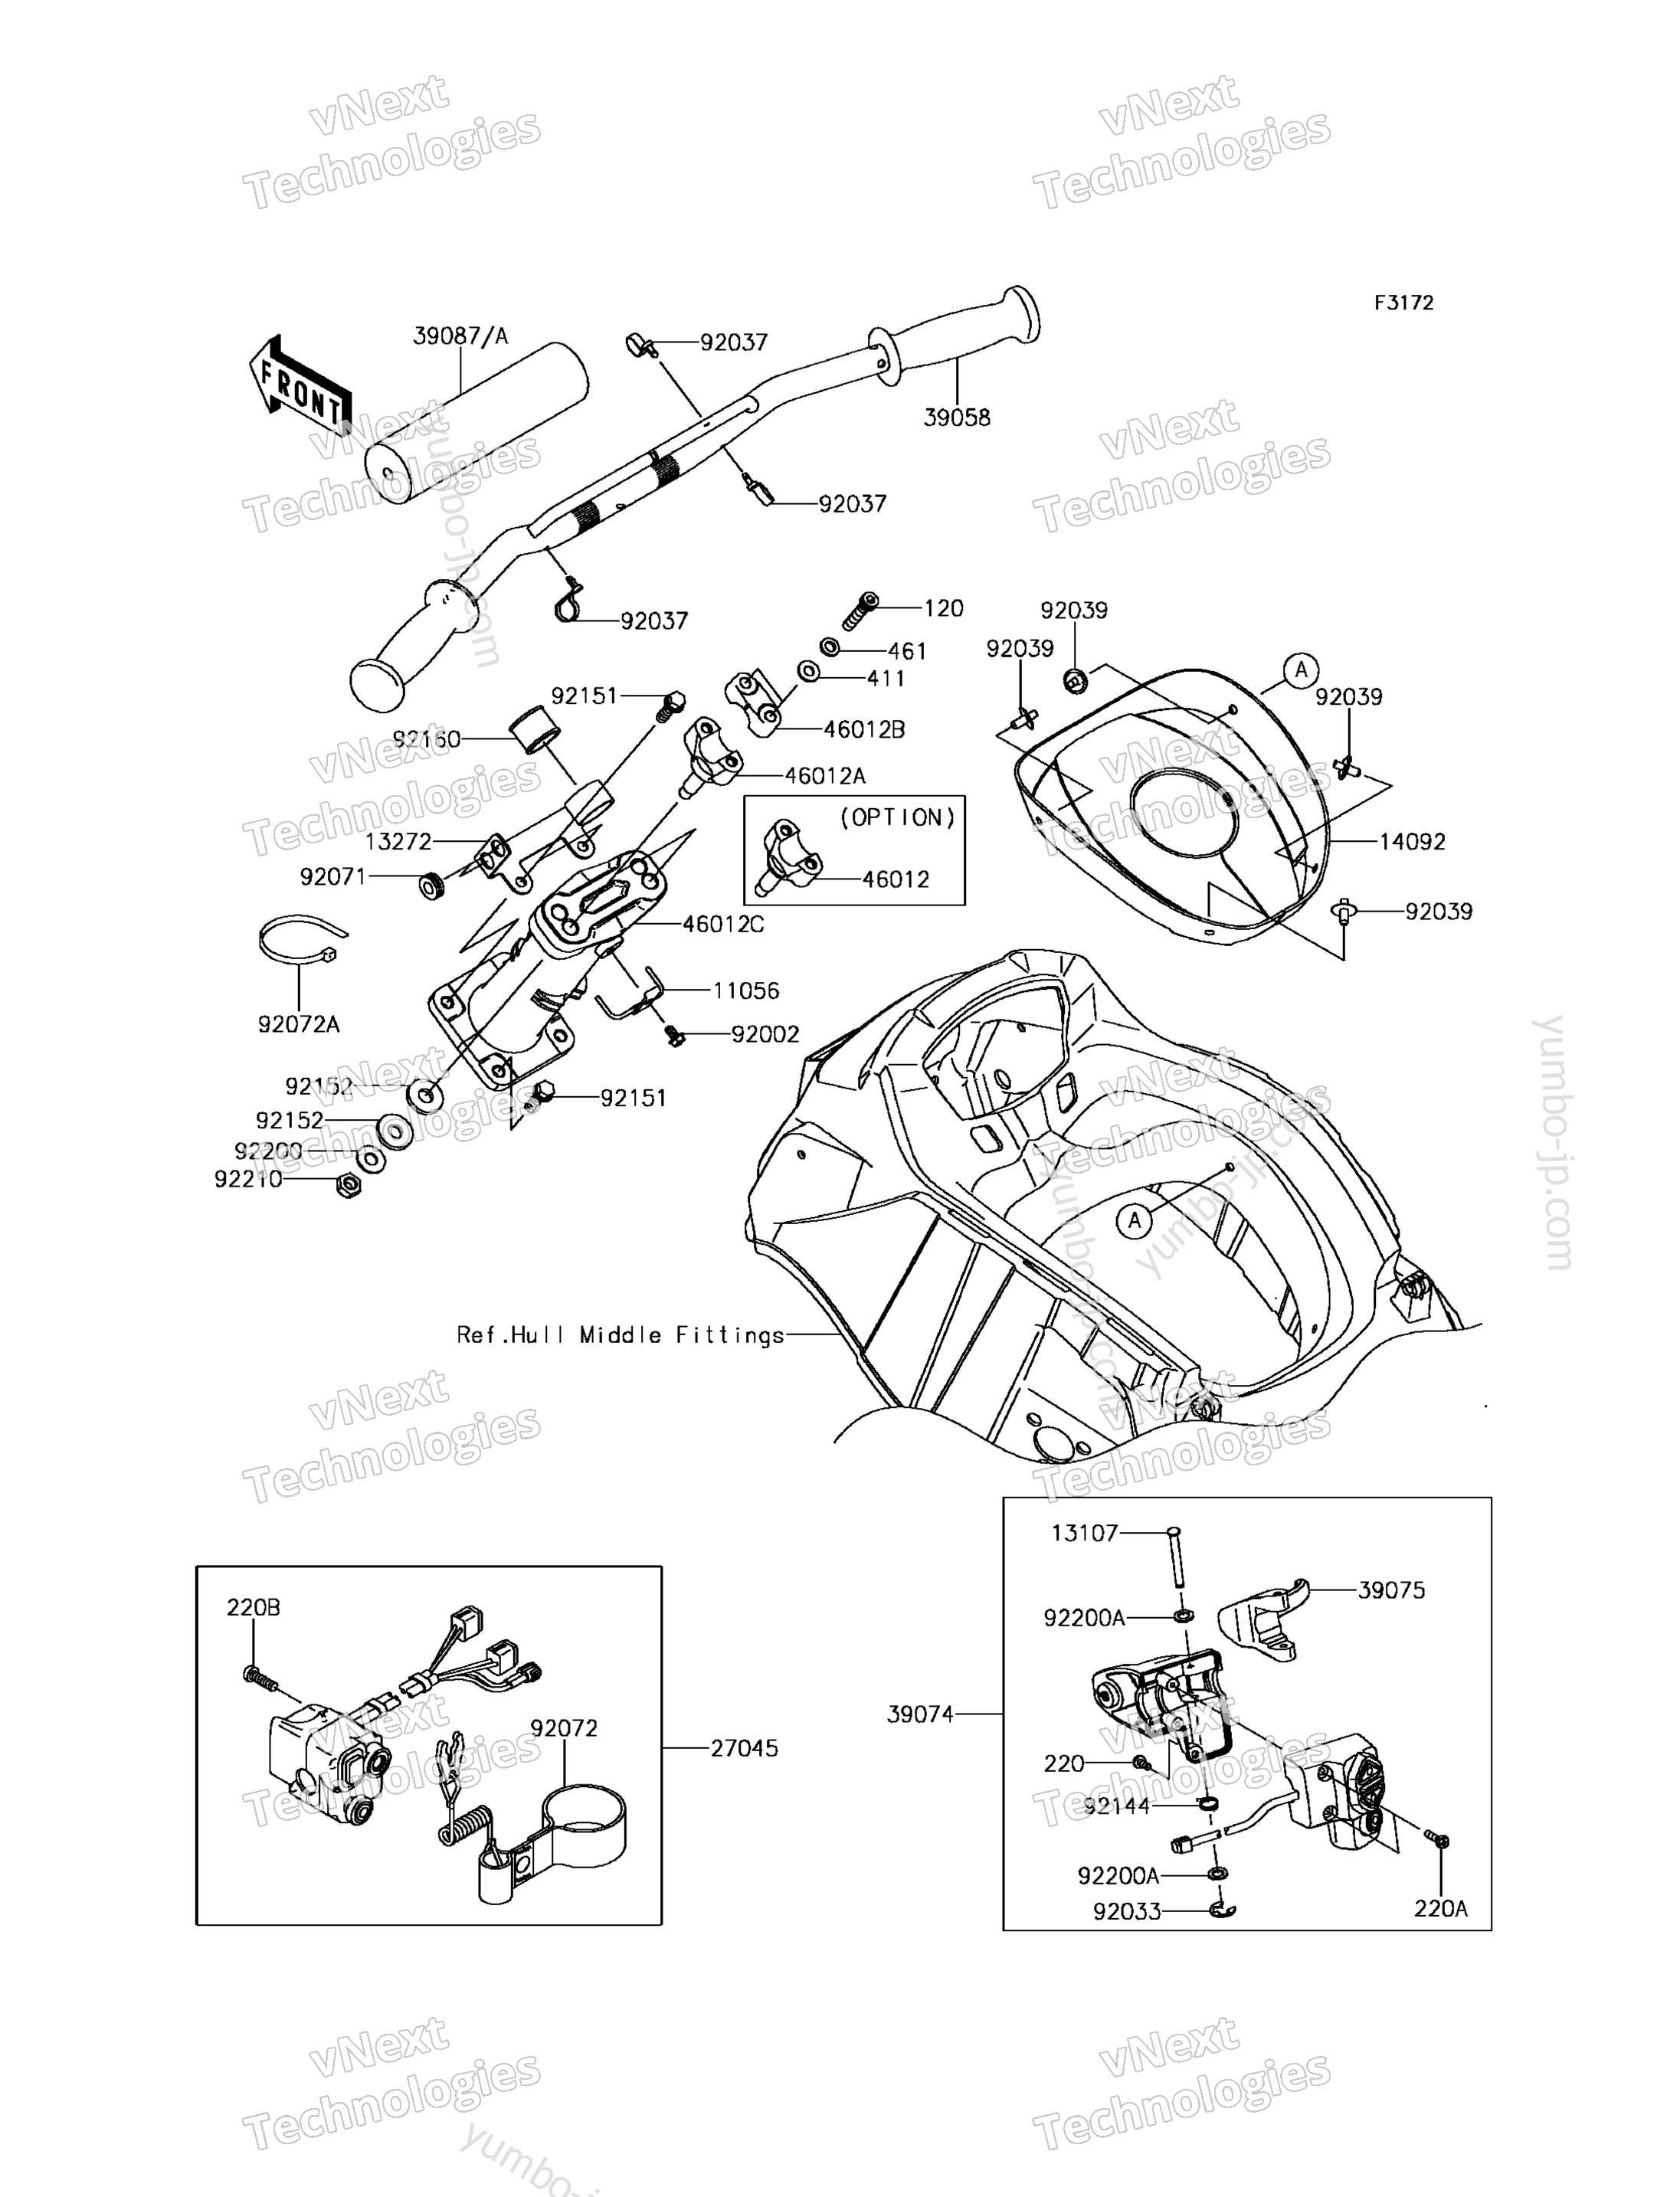 Румпель (рукоятка управления) для гидроциклов KAWASAKI JET SKI ULTRA 310R (JT1500NFF) 2015 г.